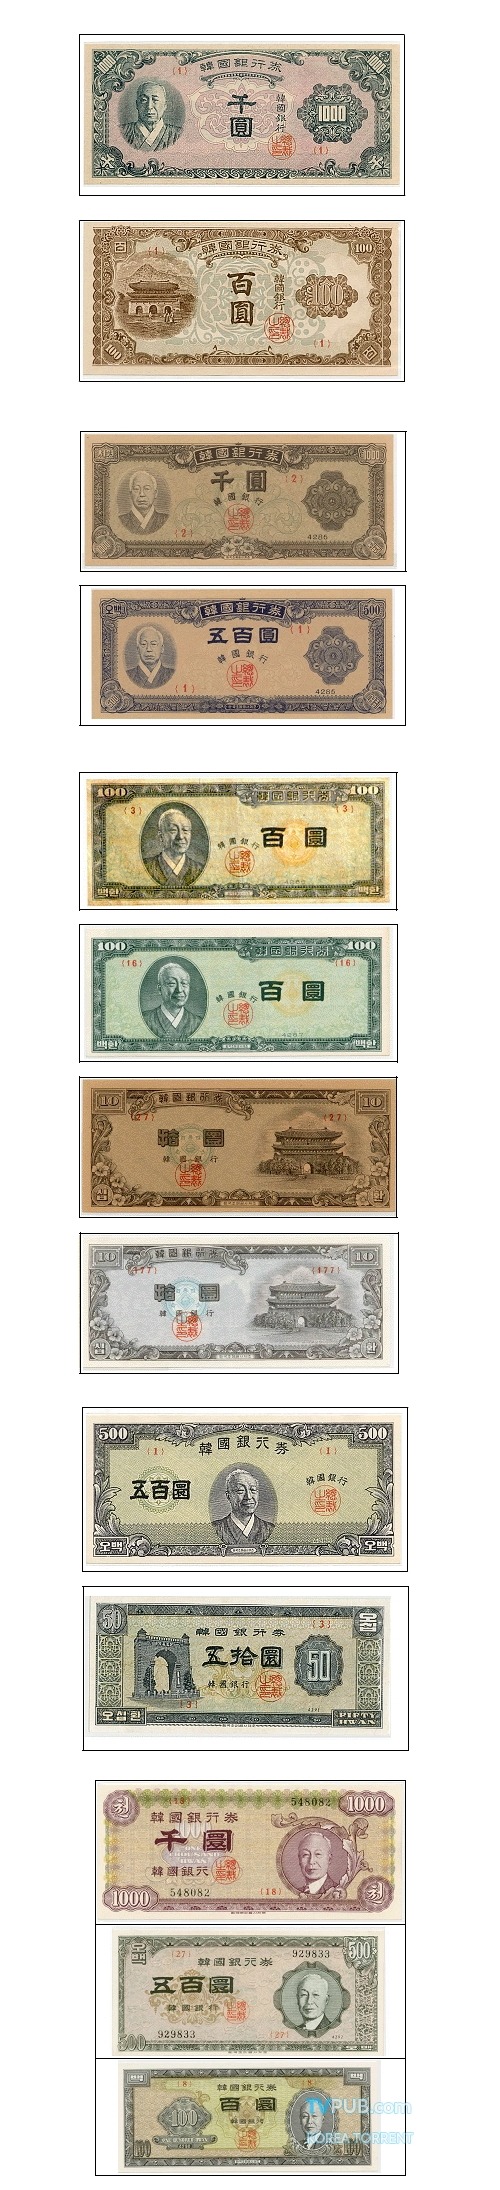 일본과 비슷했던 50년전 한국의 지폐